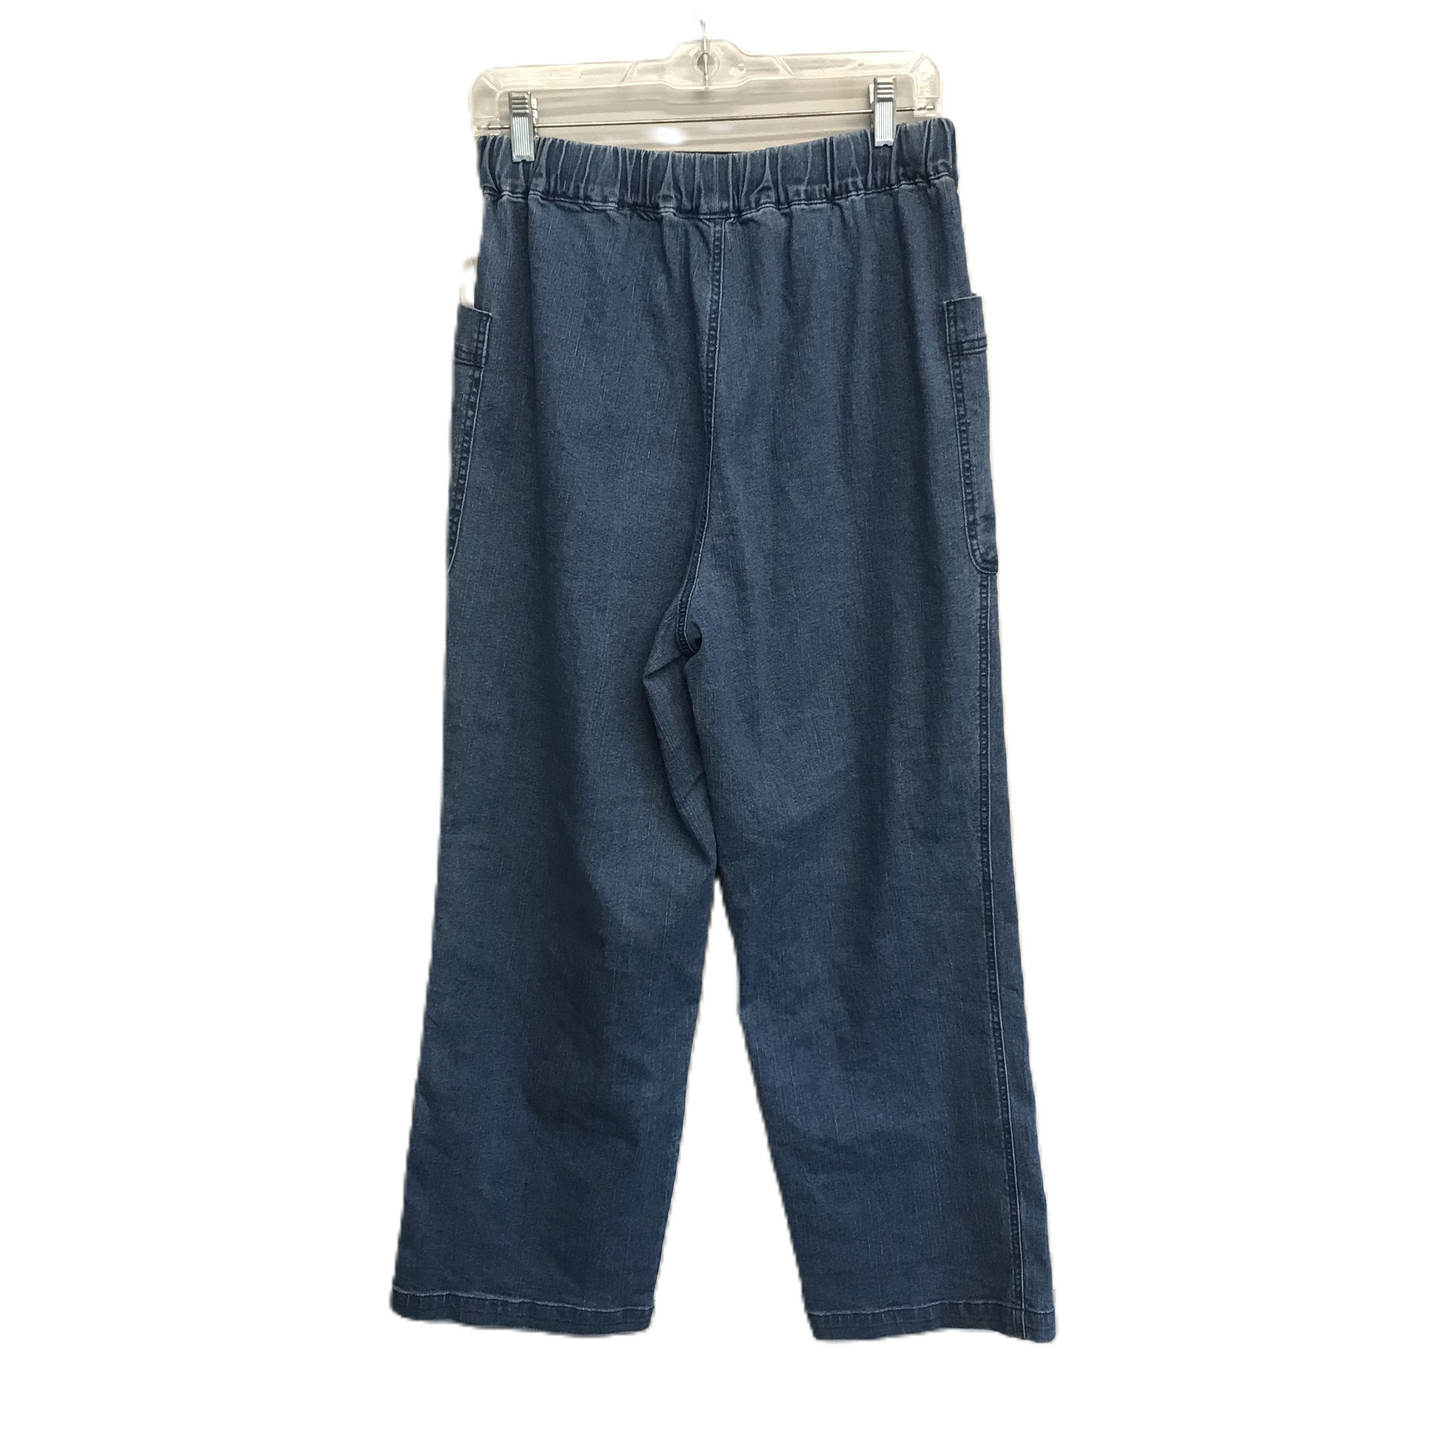 Blue Denim Jeans Wide Leg By FeelGoodStore, Size: 8